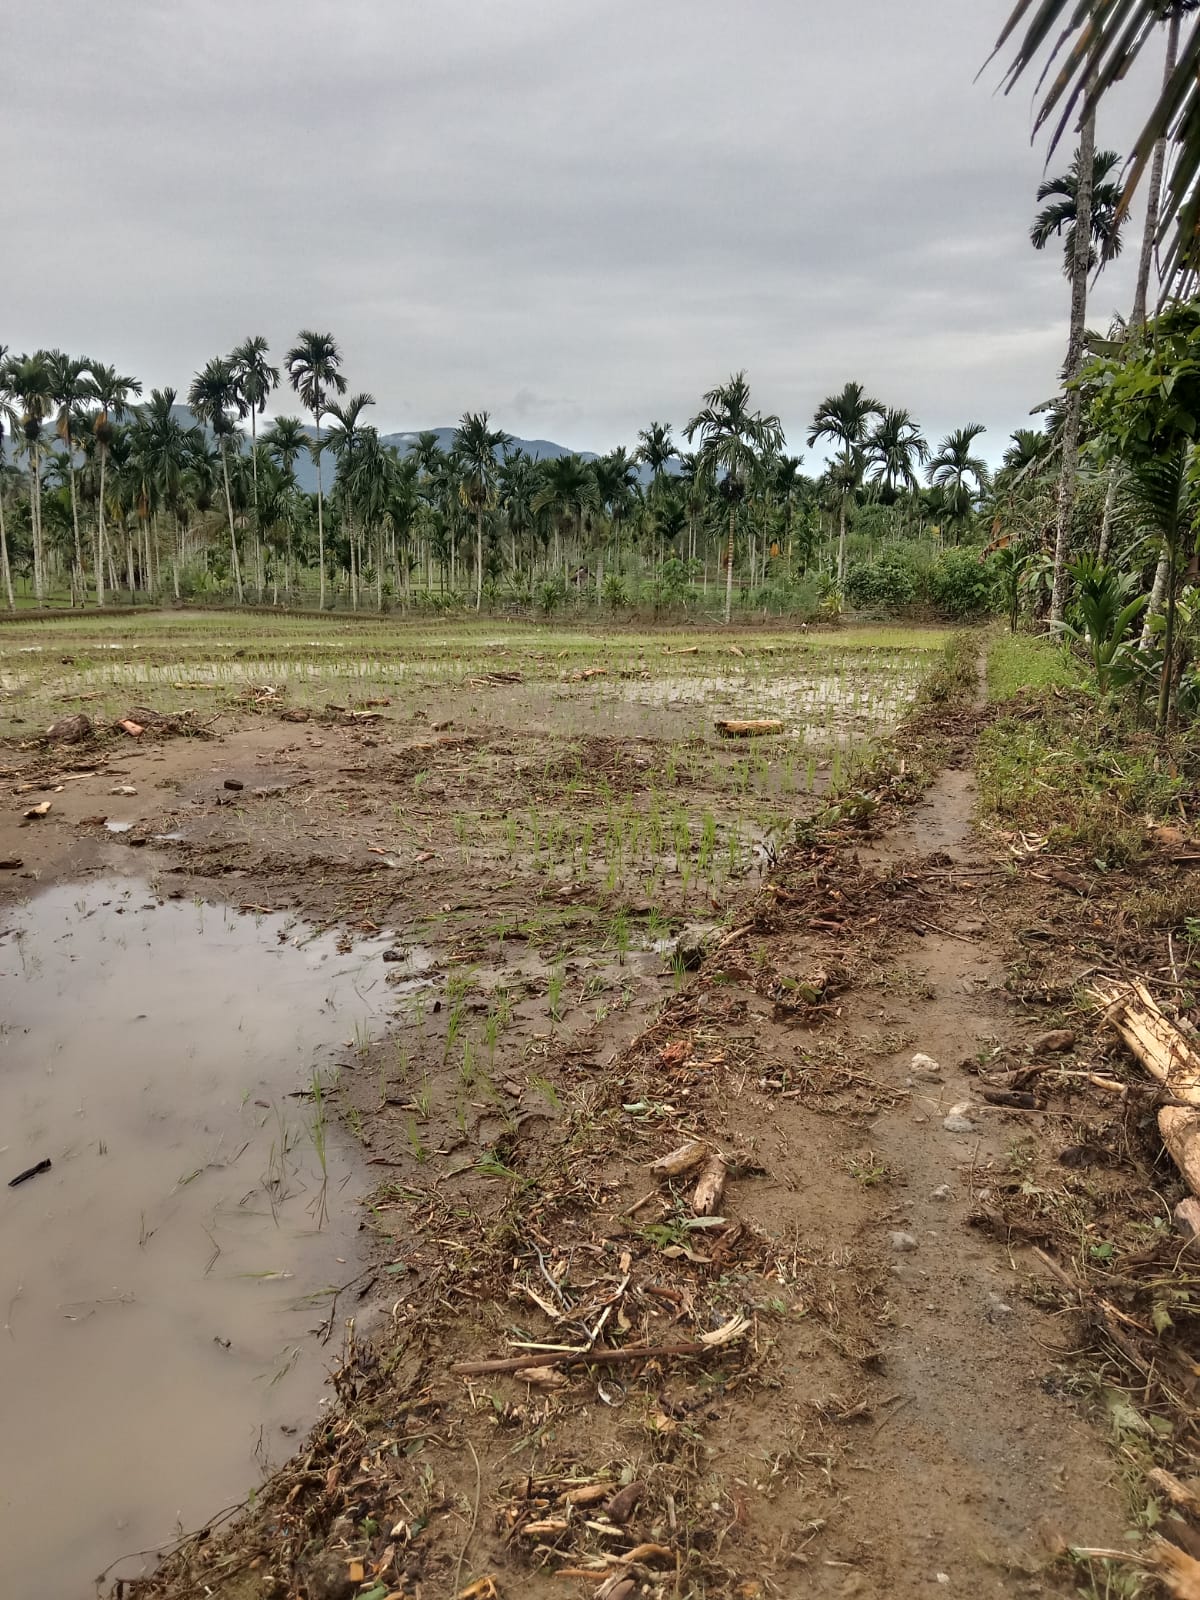  4 Hektar Padi Baru Tanam Disapu Luapan Bioa Baes, Warga Terdampak Minta Penanganan Serius oleh Pemerintah 